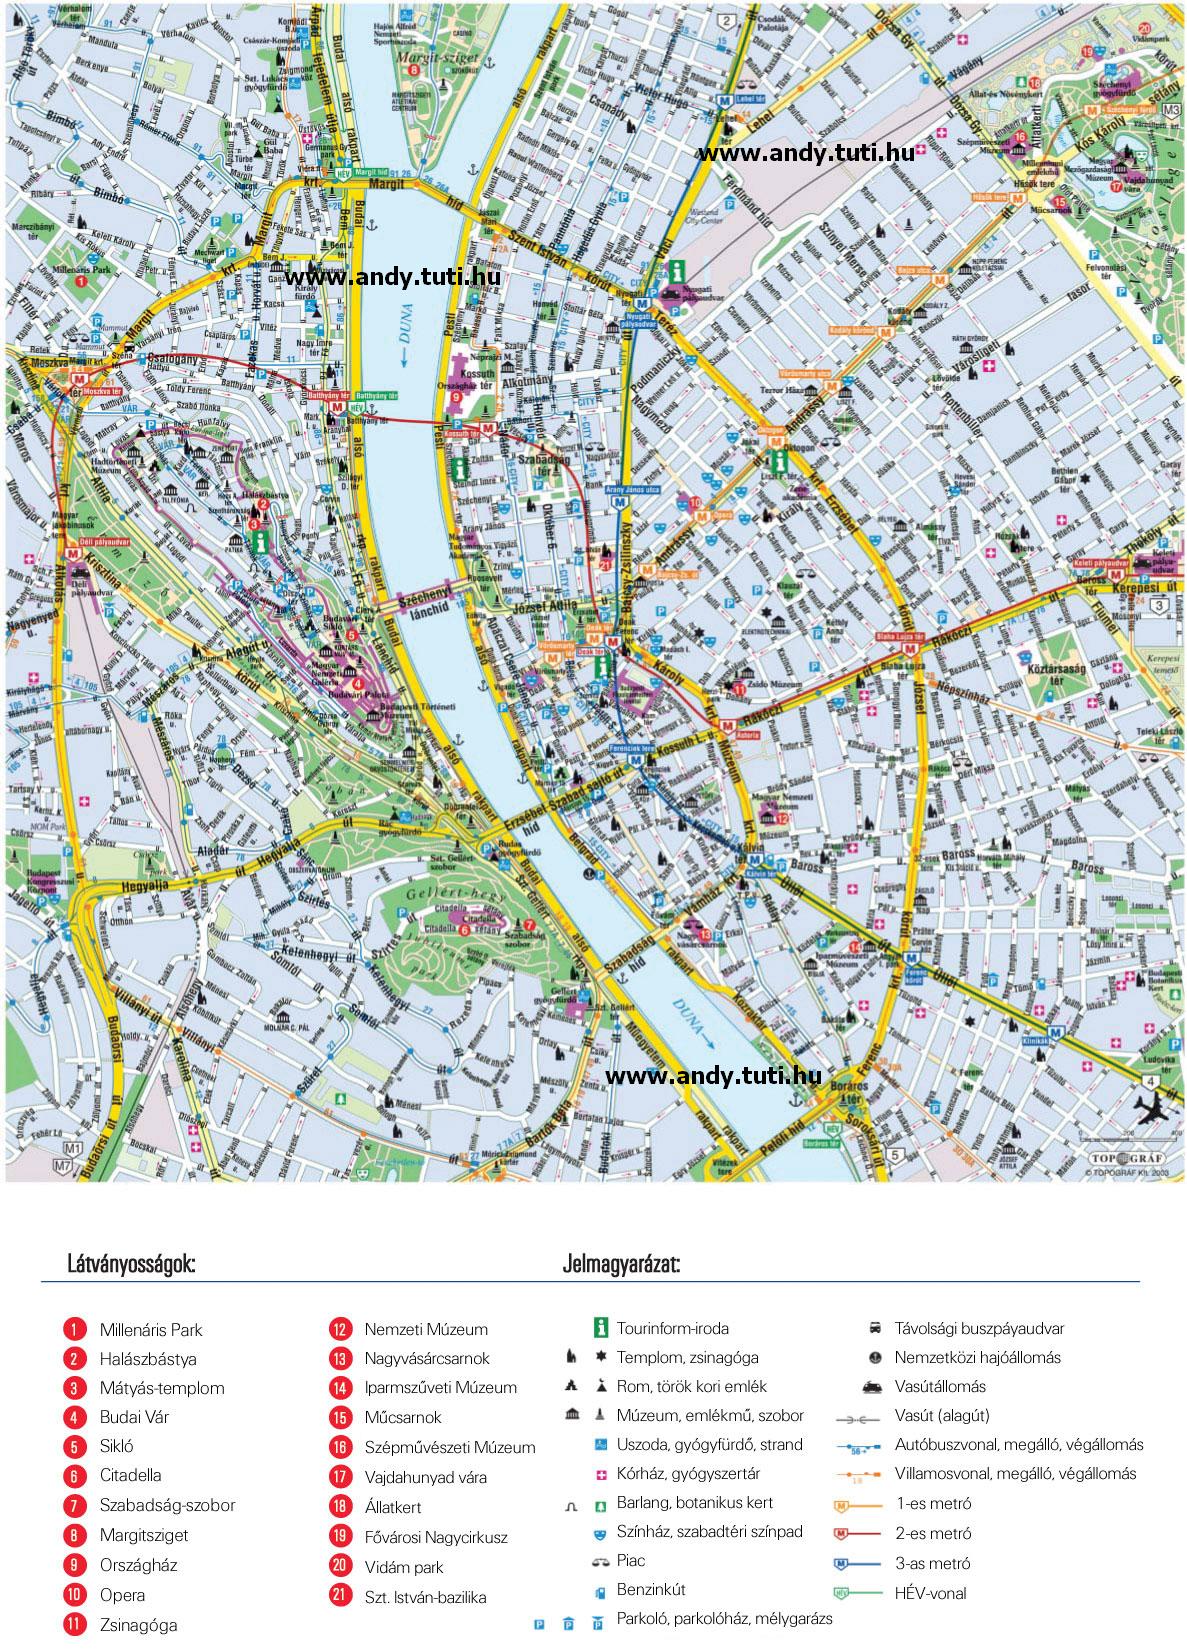 nyomtatható debrecen térkép Letölthető térképek :::::: Powered by: .webtar.hu ::::::* nyomtatható debrecen térkép